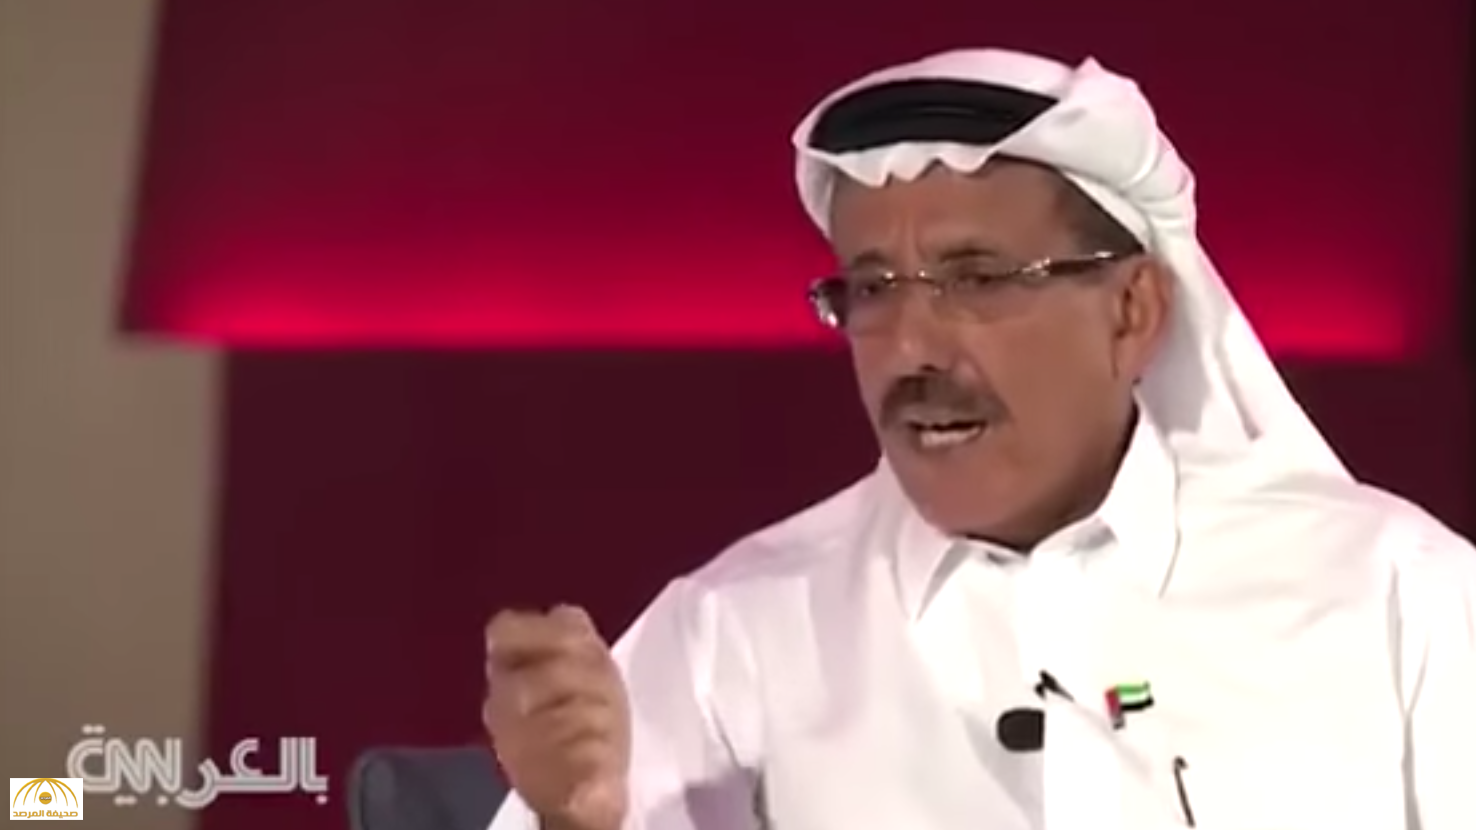 رجل الأعمال الإماراتي خلف الحبتور  يدعو لشرب الخمر  ومرافقة النساء في بلاده -فيديو